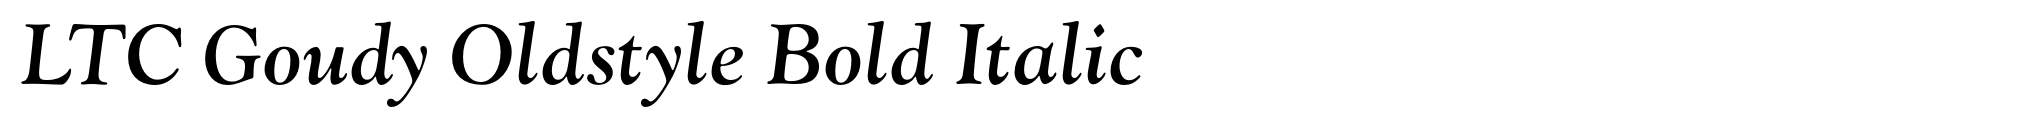 LTC Goudy Oldstyle Bold Italic image